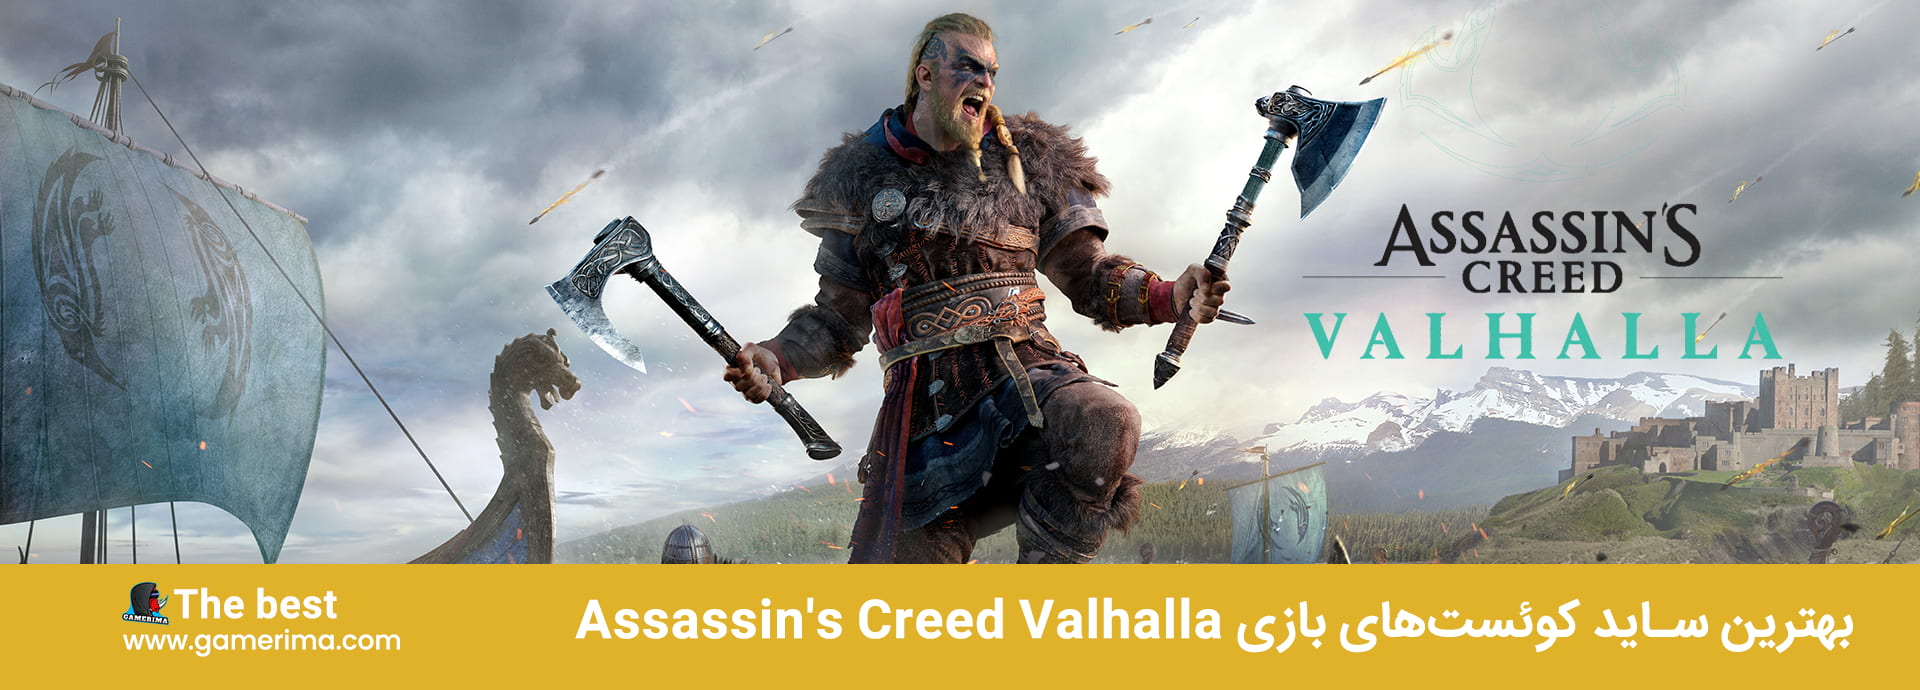 بهترین ساید کوئست های بازی Assassin’s Creed Valhalla